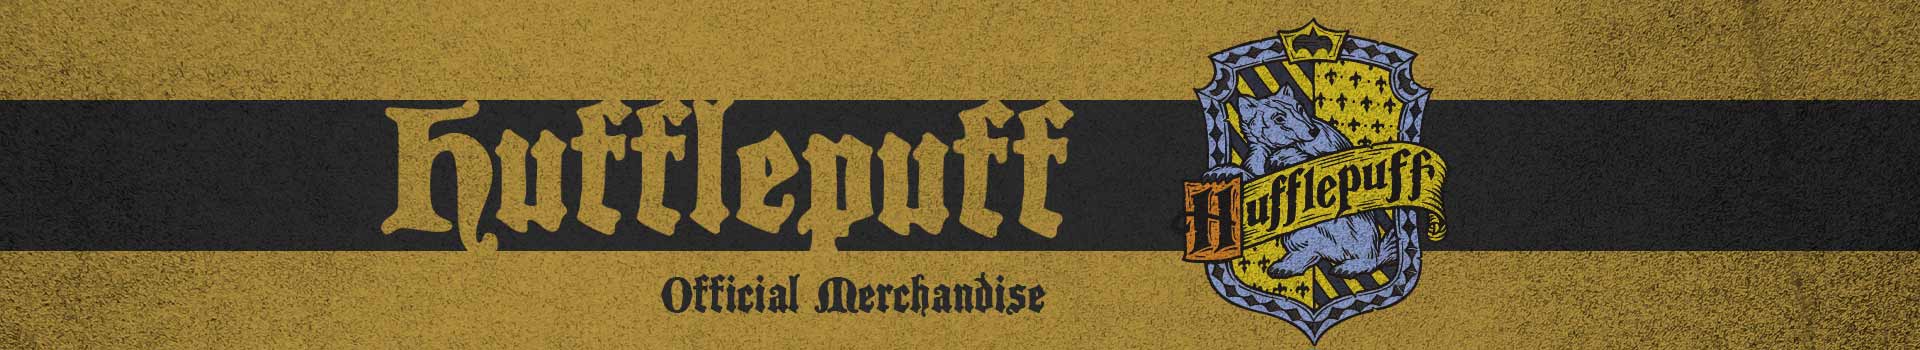 Hufflepuff - Official Merchandise